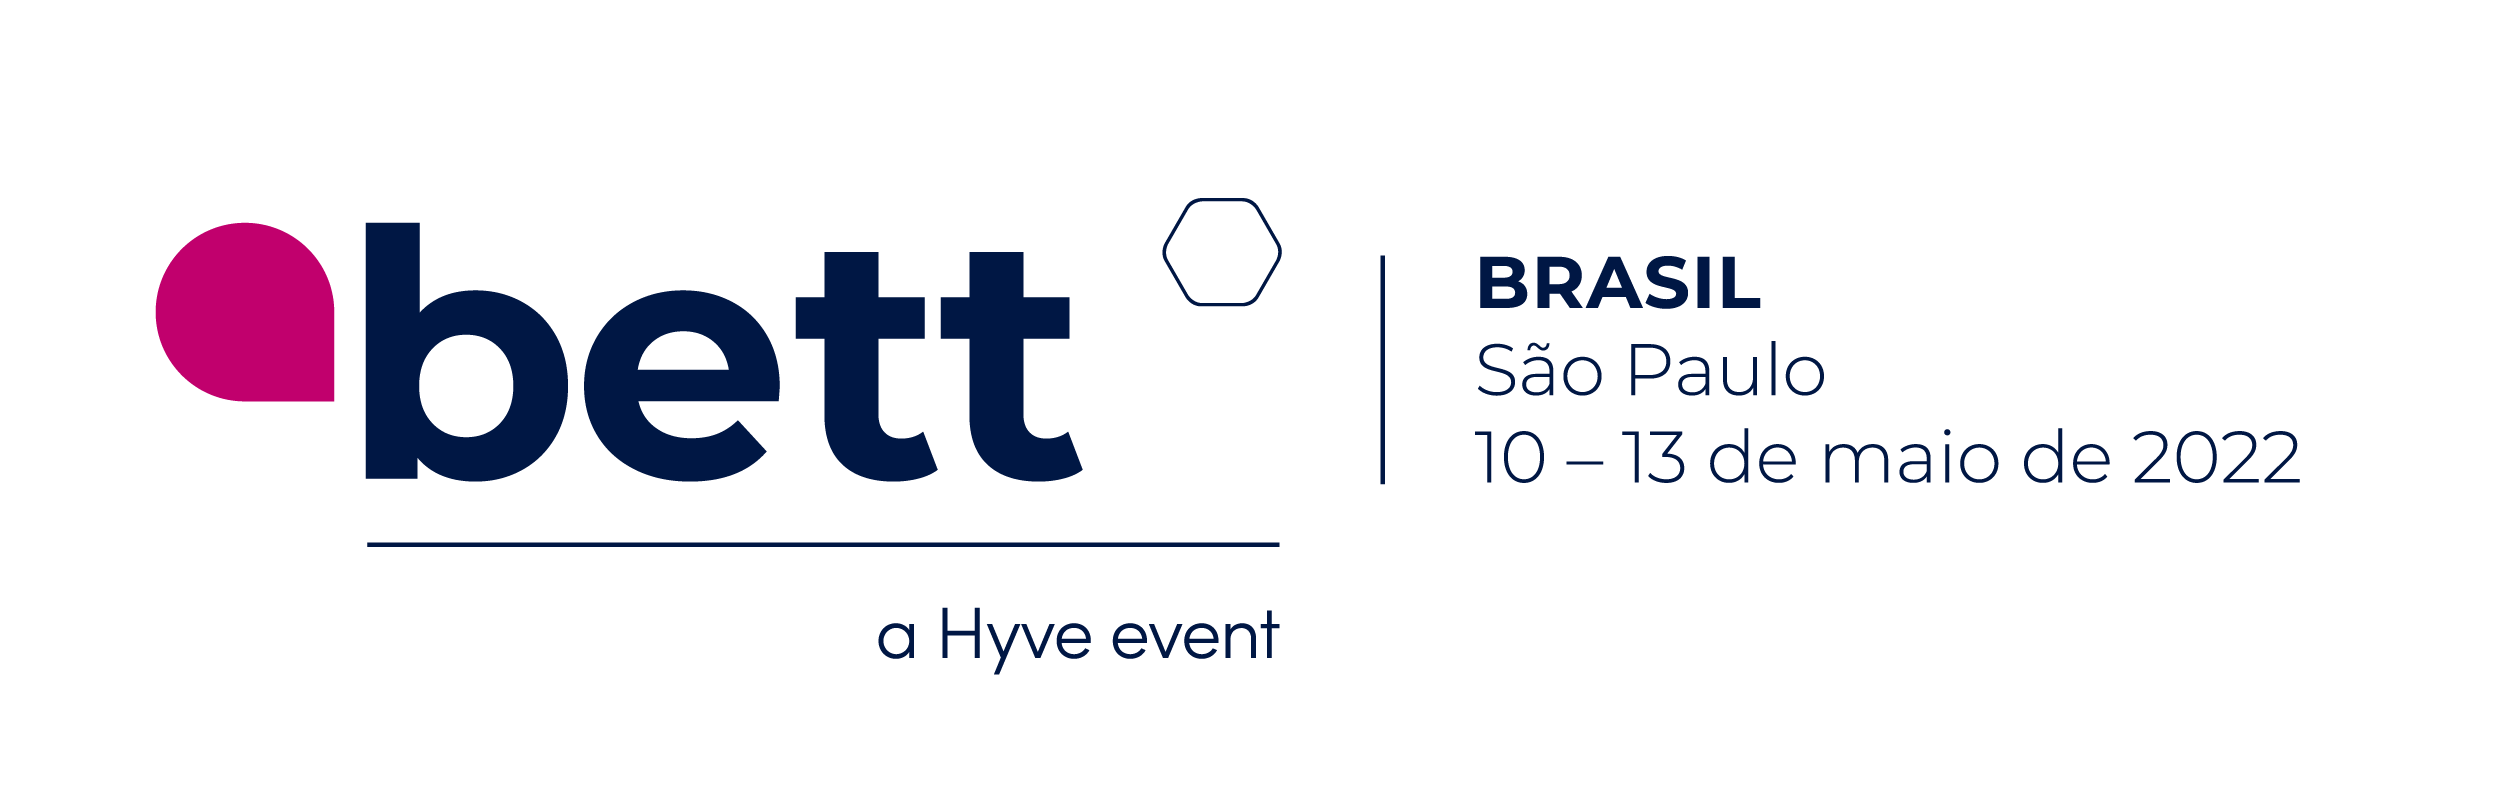 logo_bett_brasil